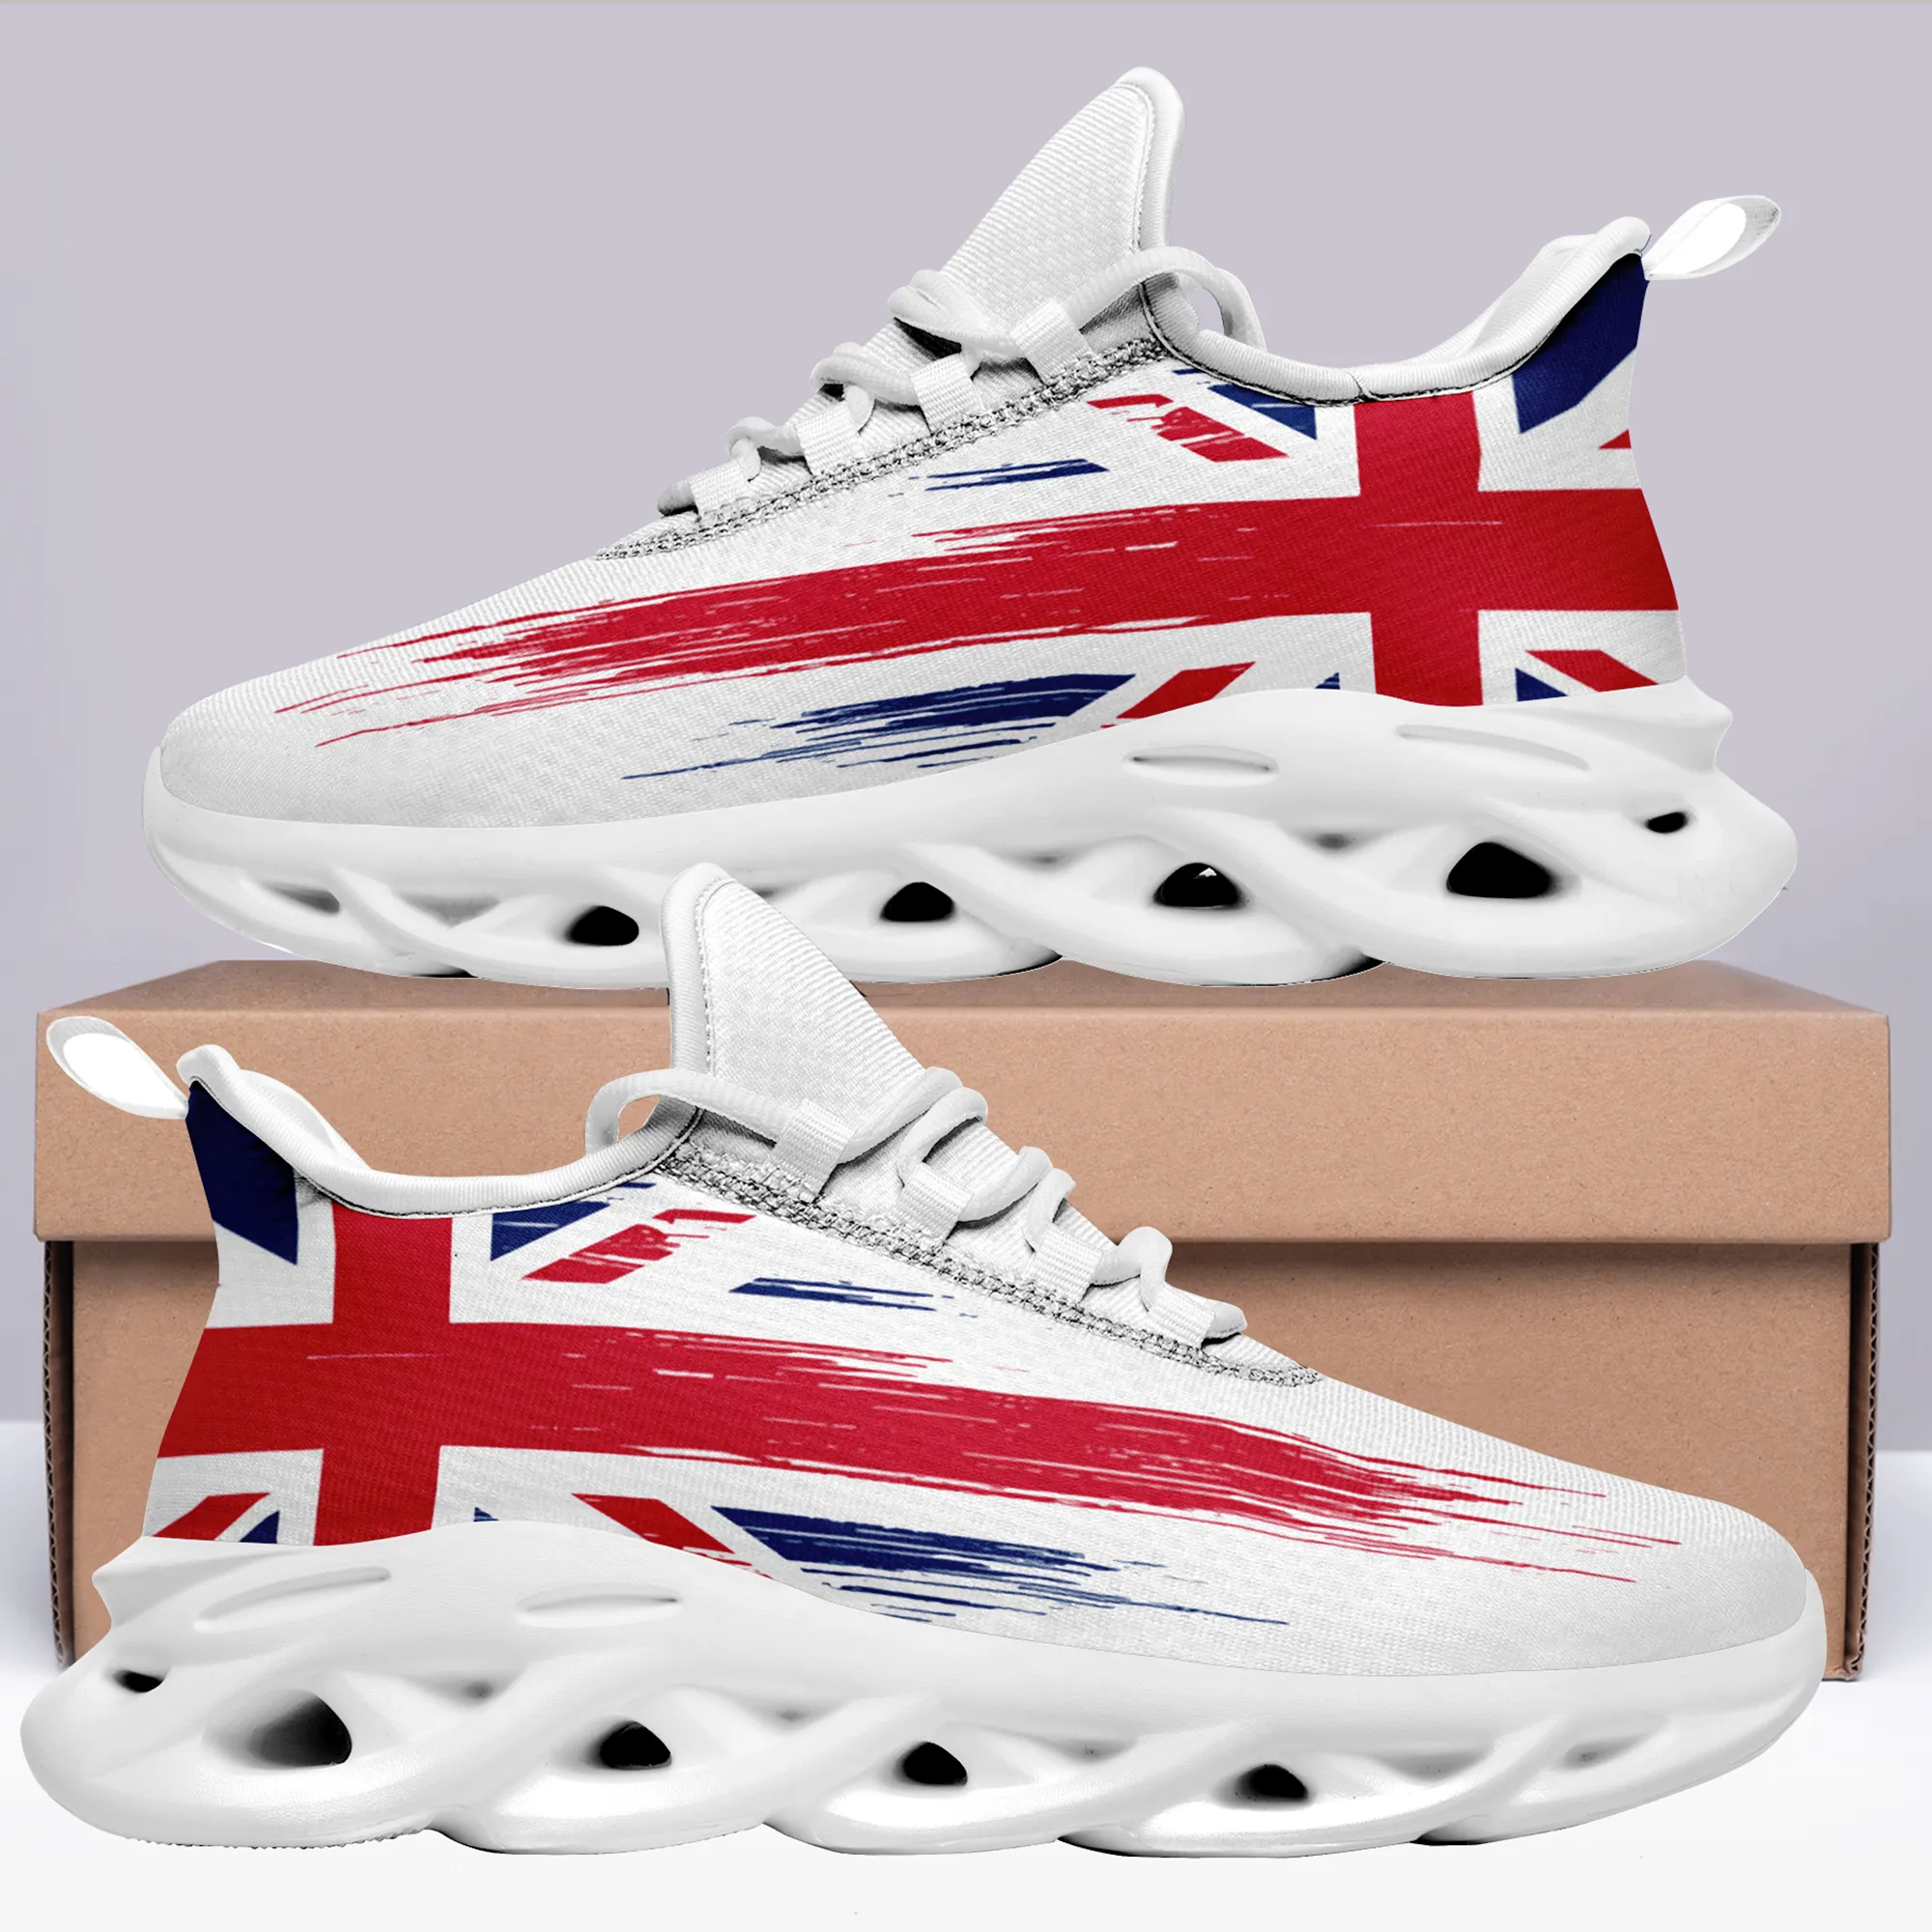 Coolcustomize Inghilterra patriottica bandiera del Regno Unito scarpe da tennis da corsa da passeggio regalo per un amico sneaker alla moda unisex leggera e confortevole con lacci personalizzata